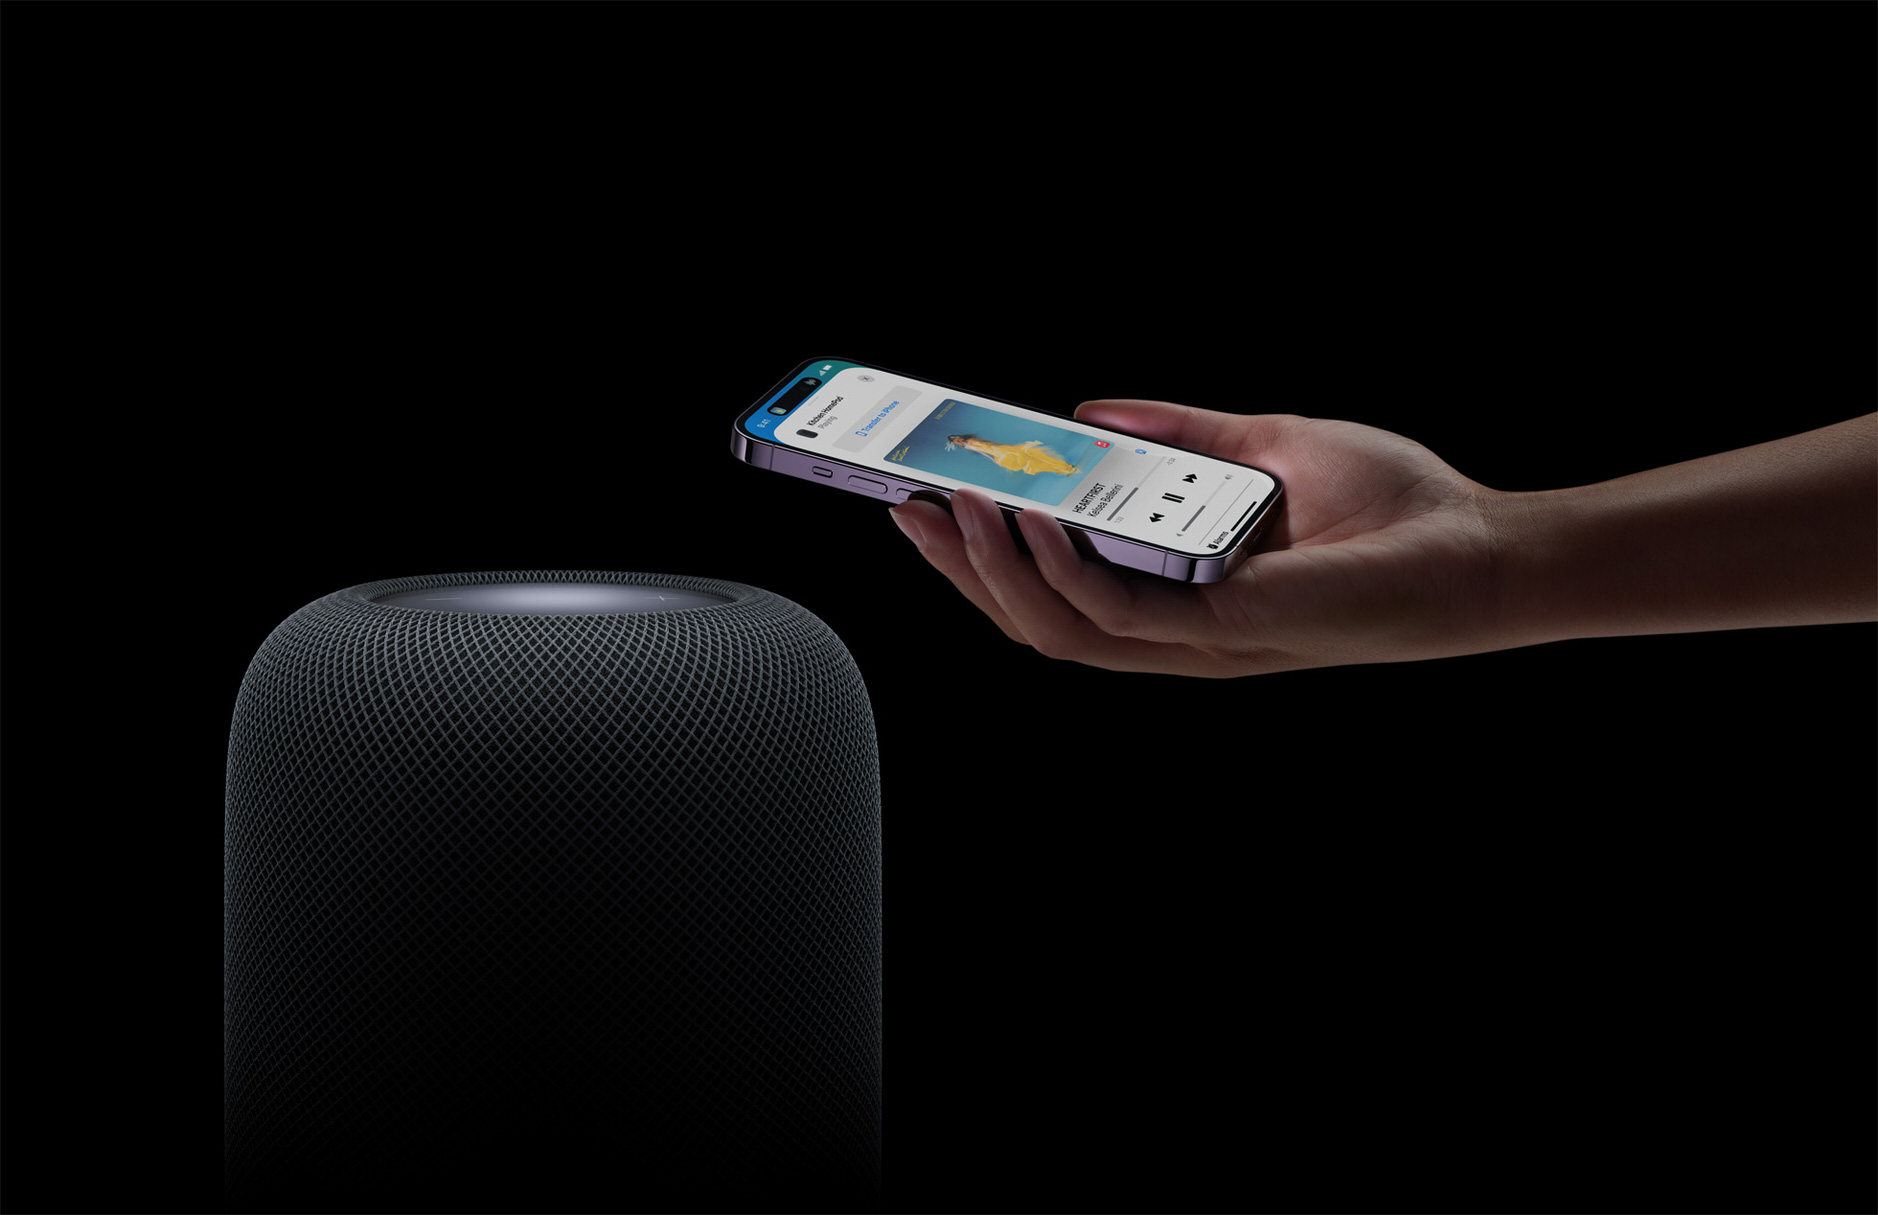 Bild zeigt HomePod dem sich ein iPhone nähert.